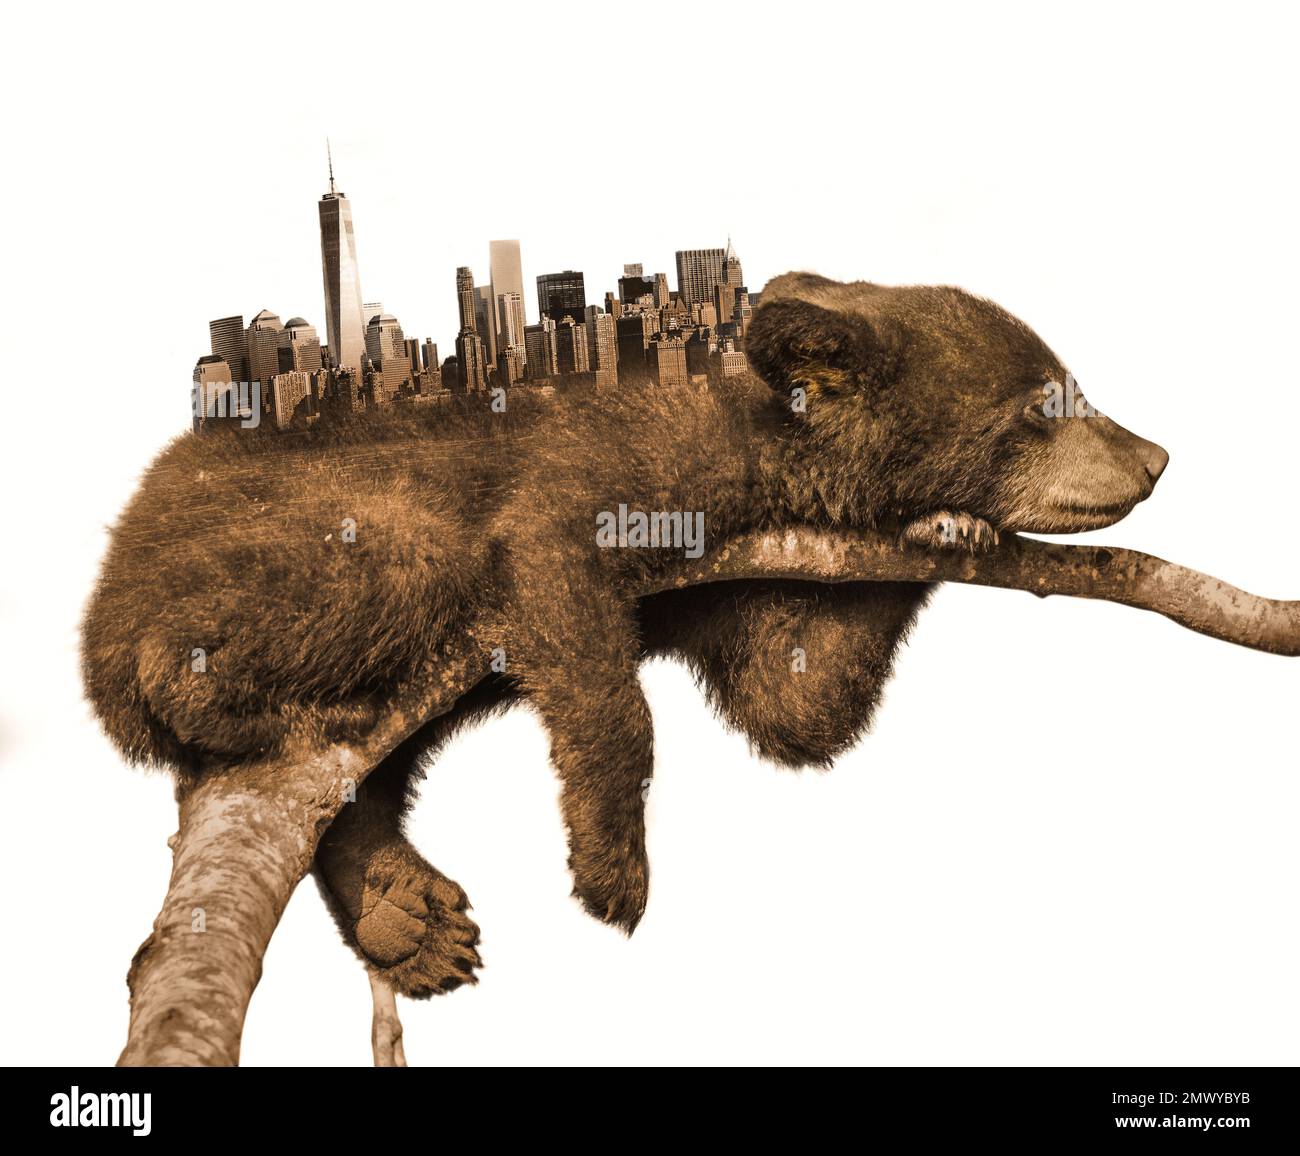 Schlafender Bär. Die Silhouette der Stadt auf dem Rücken des Bären. Der Bär schläft auf dem Ast. Um Tieren das natürliche Leben zu nehmen. Fotobearbeitung. Stockfoto